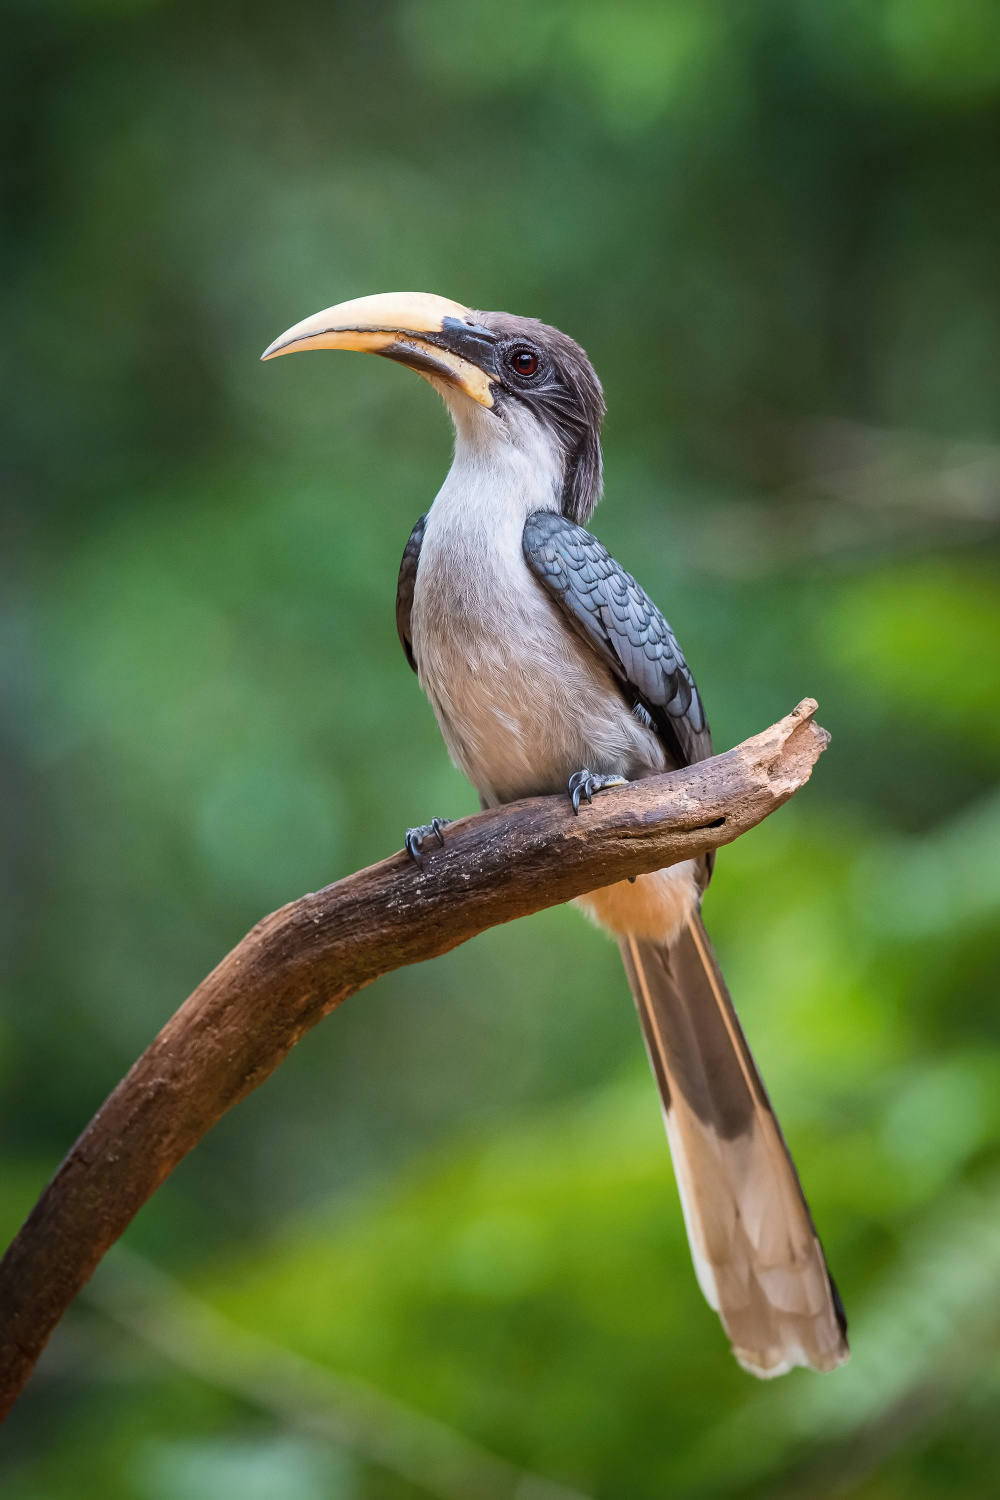 zoborožec srílanský (Ocyceros gingalensis) Sri Lanka grey hornbill